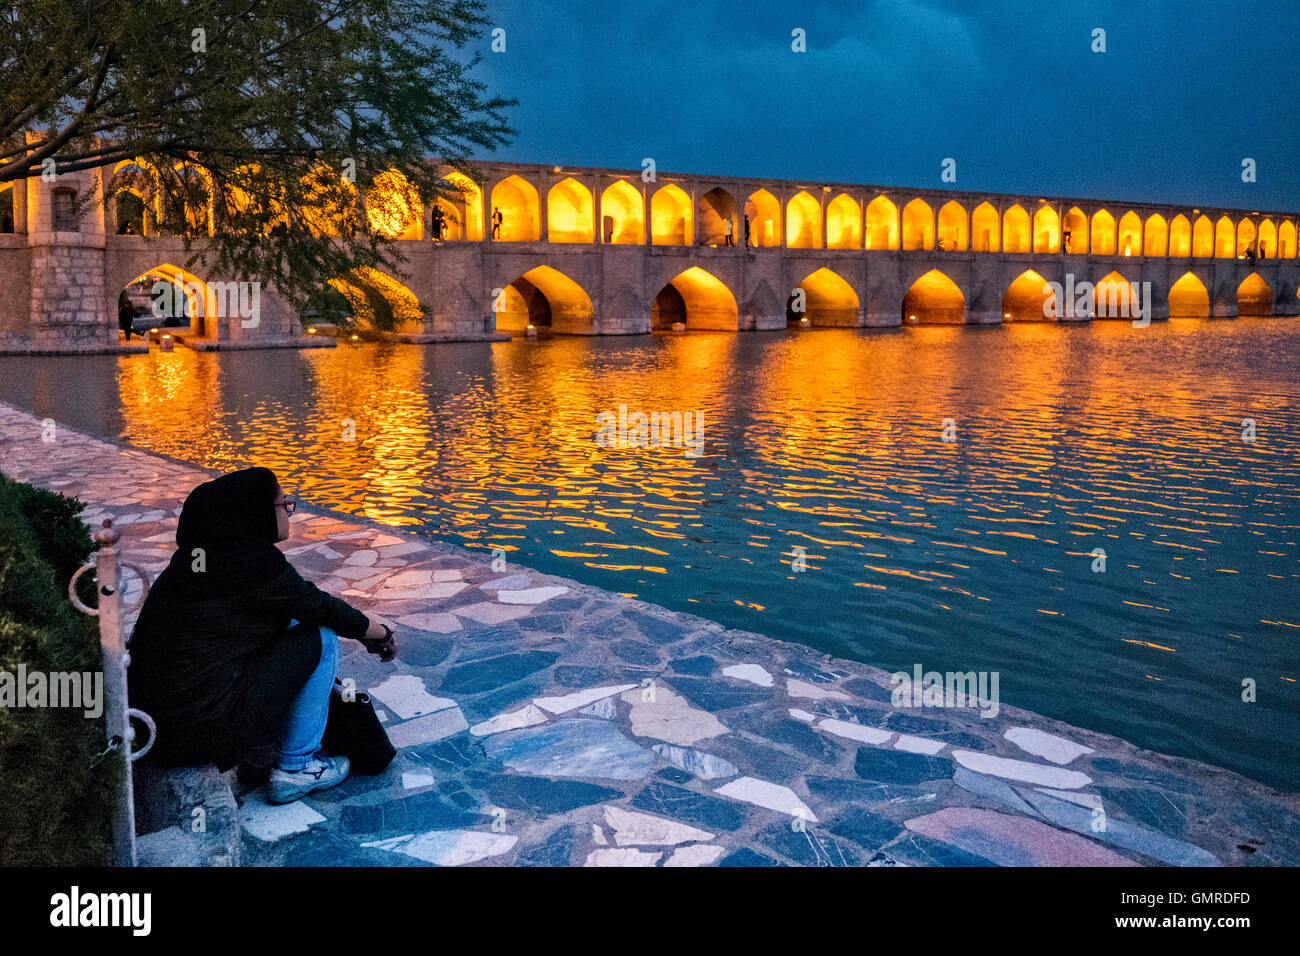 Femme iranienne en regardant le Allāhverdi hijab Khan populairement connu sous le nom de pont Si-O-seh pol "Le pont de trente-trois travées", l'un des 11 ponts d'Isfahan, Iran et le plus long pont sur la rivière Zayandeh avec la longueur totale de 297,76 mètres (976,9 pieds). Il est hautement classé comme étant l'un des exemples les plus célèbres de la conception de ponts safavides. Banque D'Images